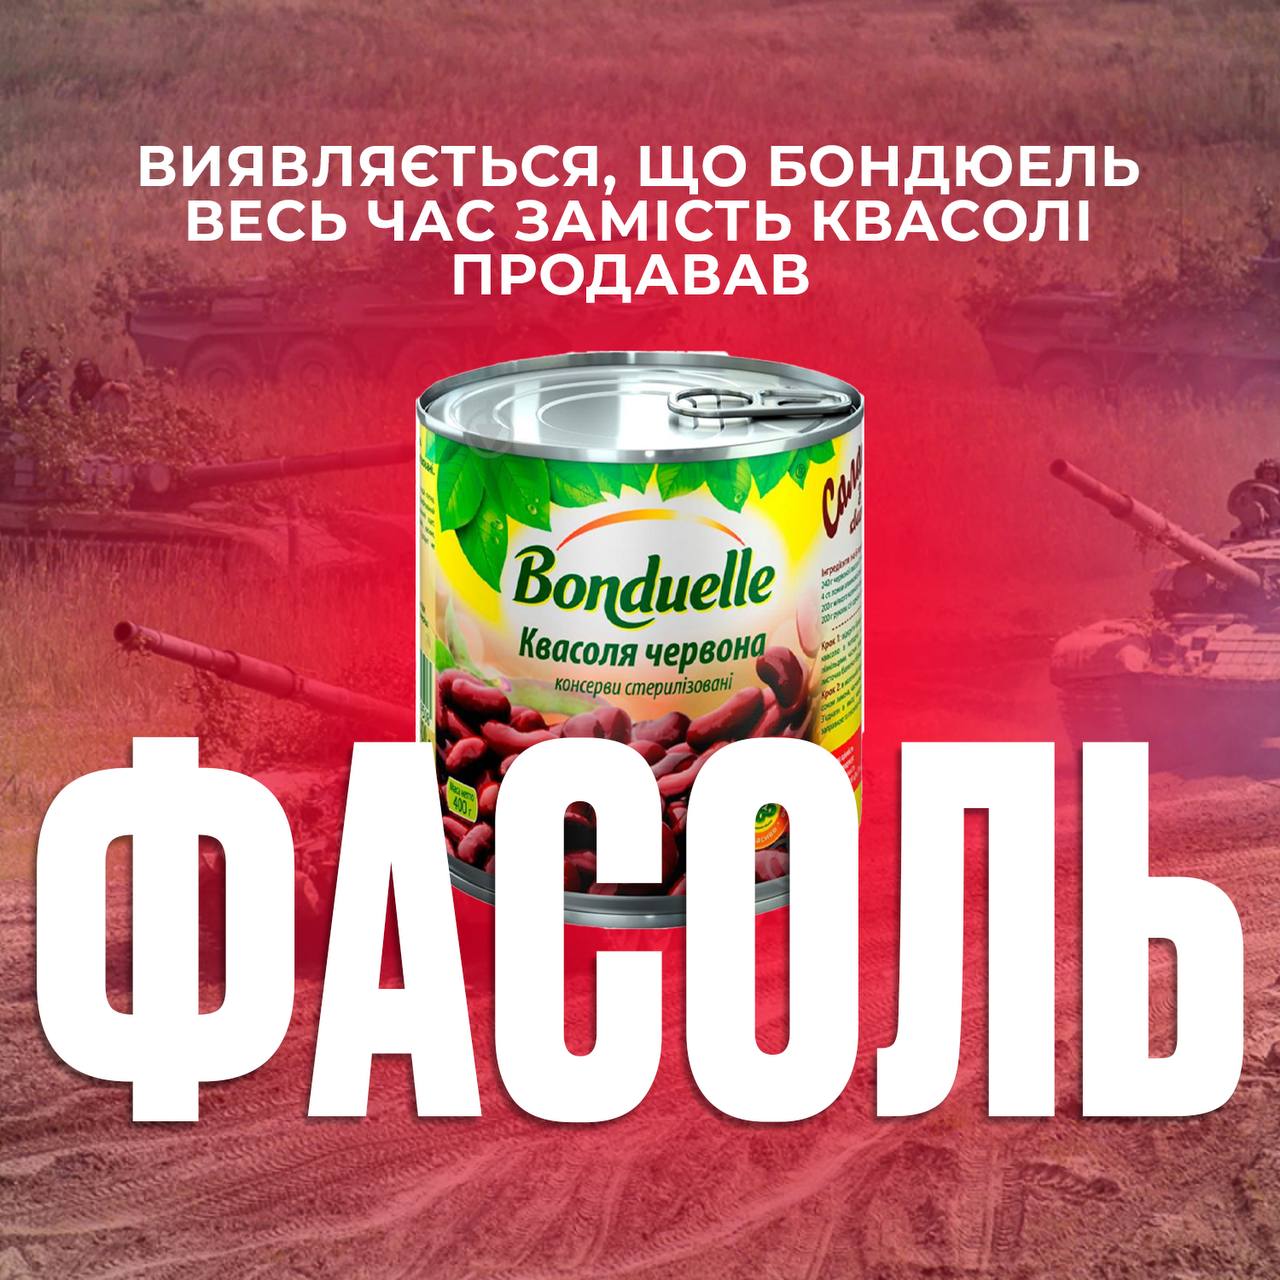 Токсичний Bonduelle? Українські супермаркети прибирають з продажу всю продукцію: що сталося